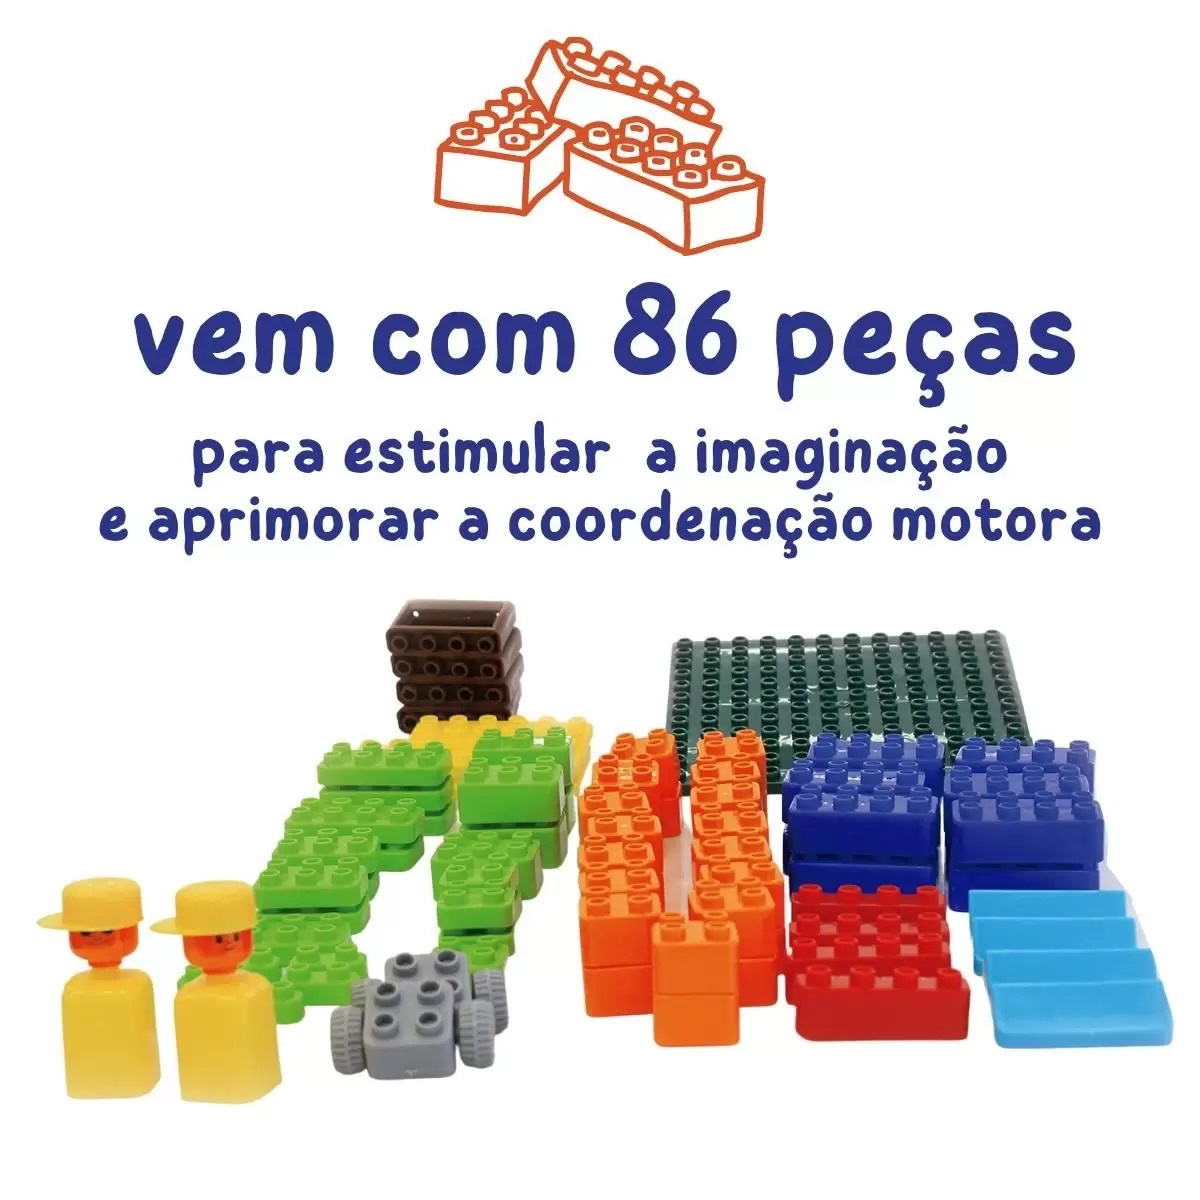 Plaquetas De Montar Em Madeira Junges 40 Peças – Maior Loja de Brinquedos  da Região